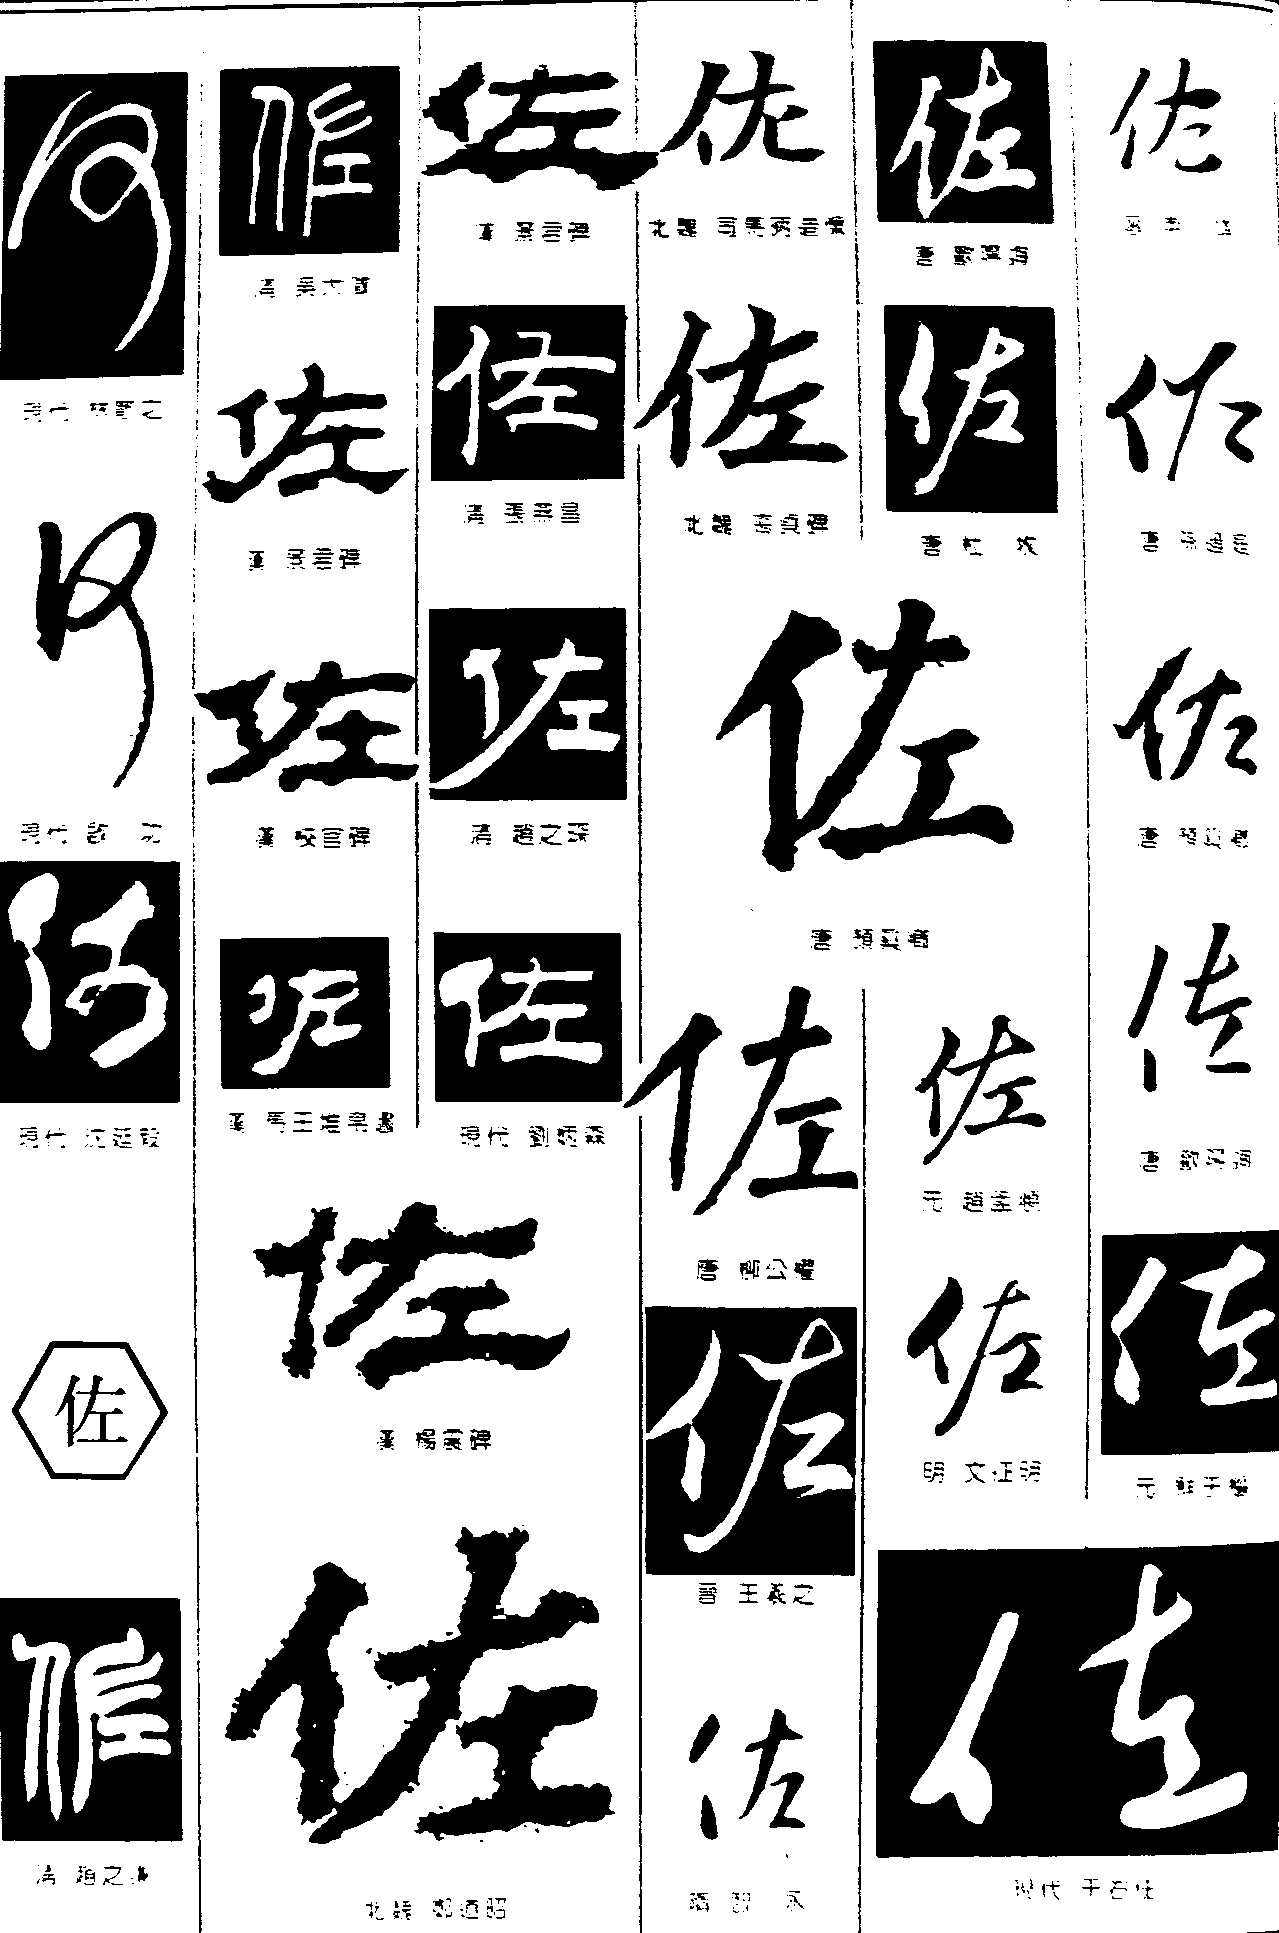 河佐 艺术字 毛笔字 书法字 繁体 标志设计 